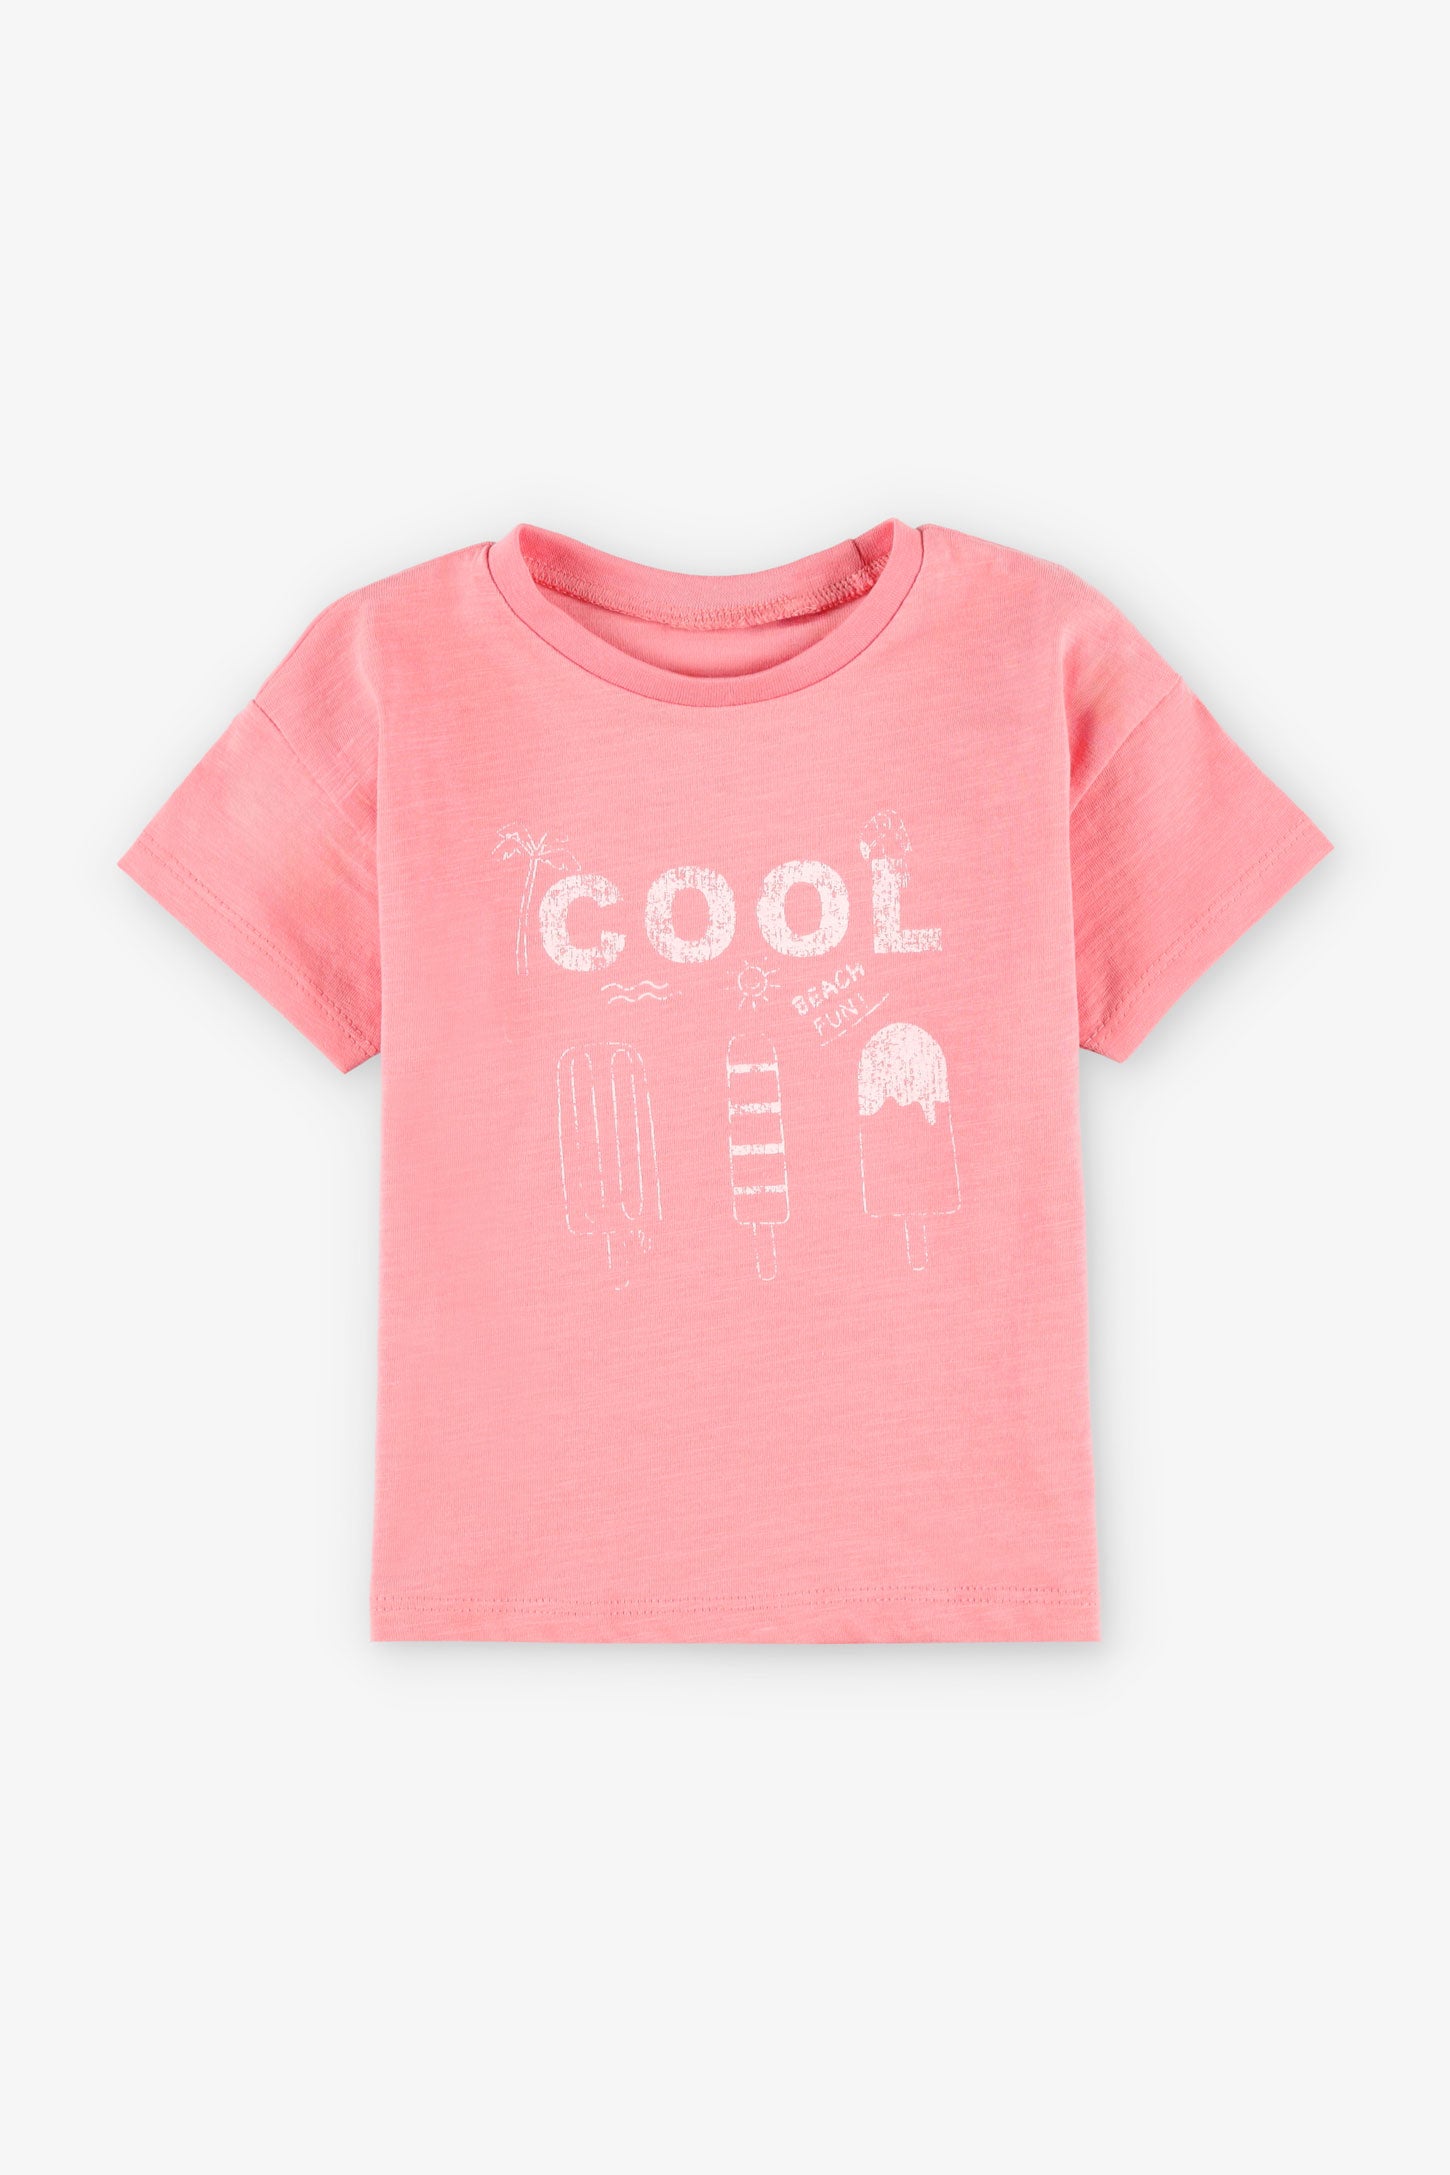 T-shirt coupe ample en coton, 2T-3T, 2/15$ - Bébé fille && ROSE